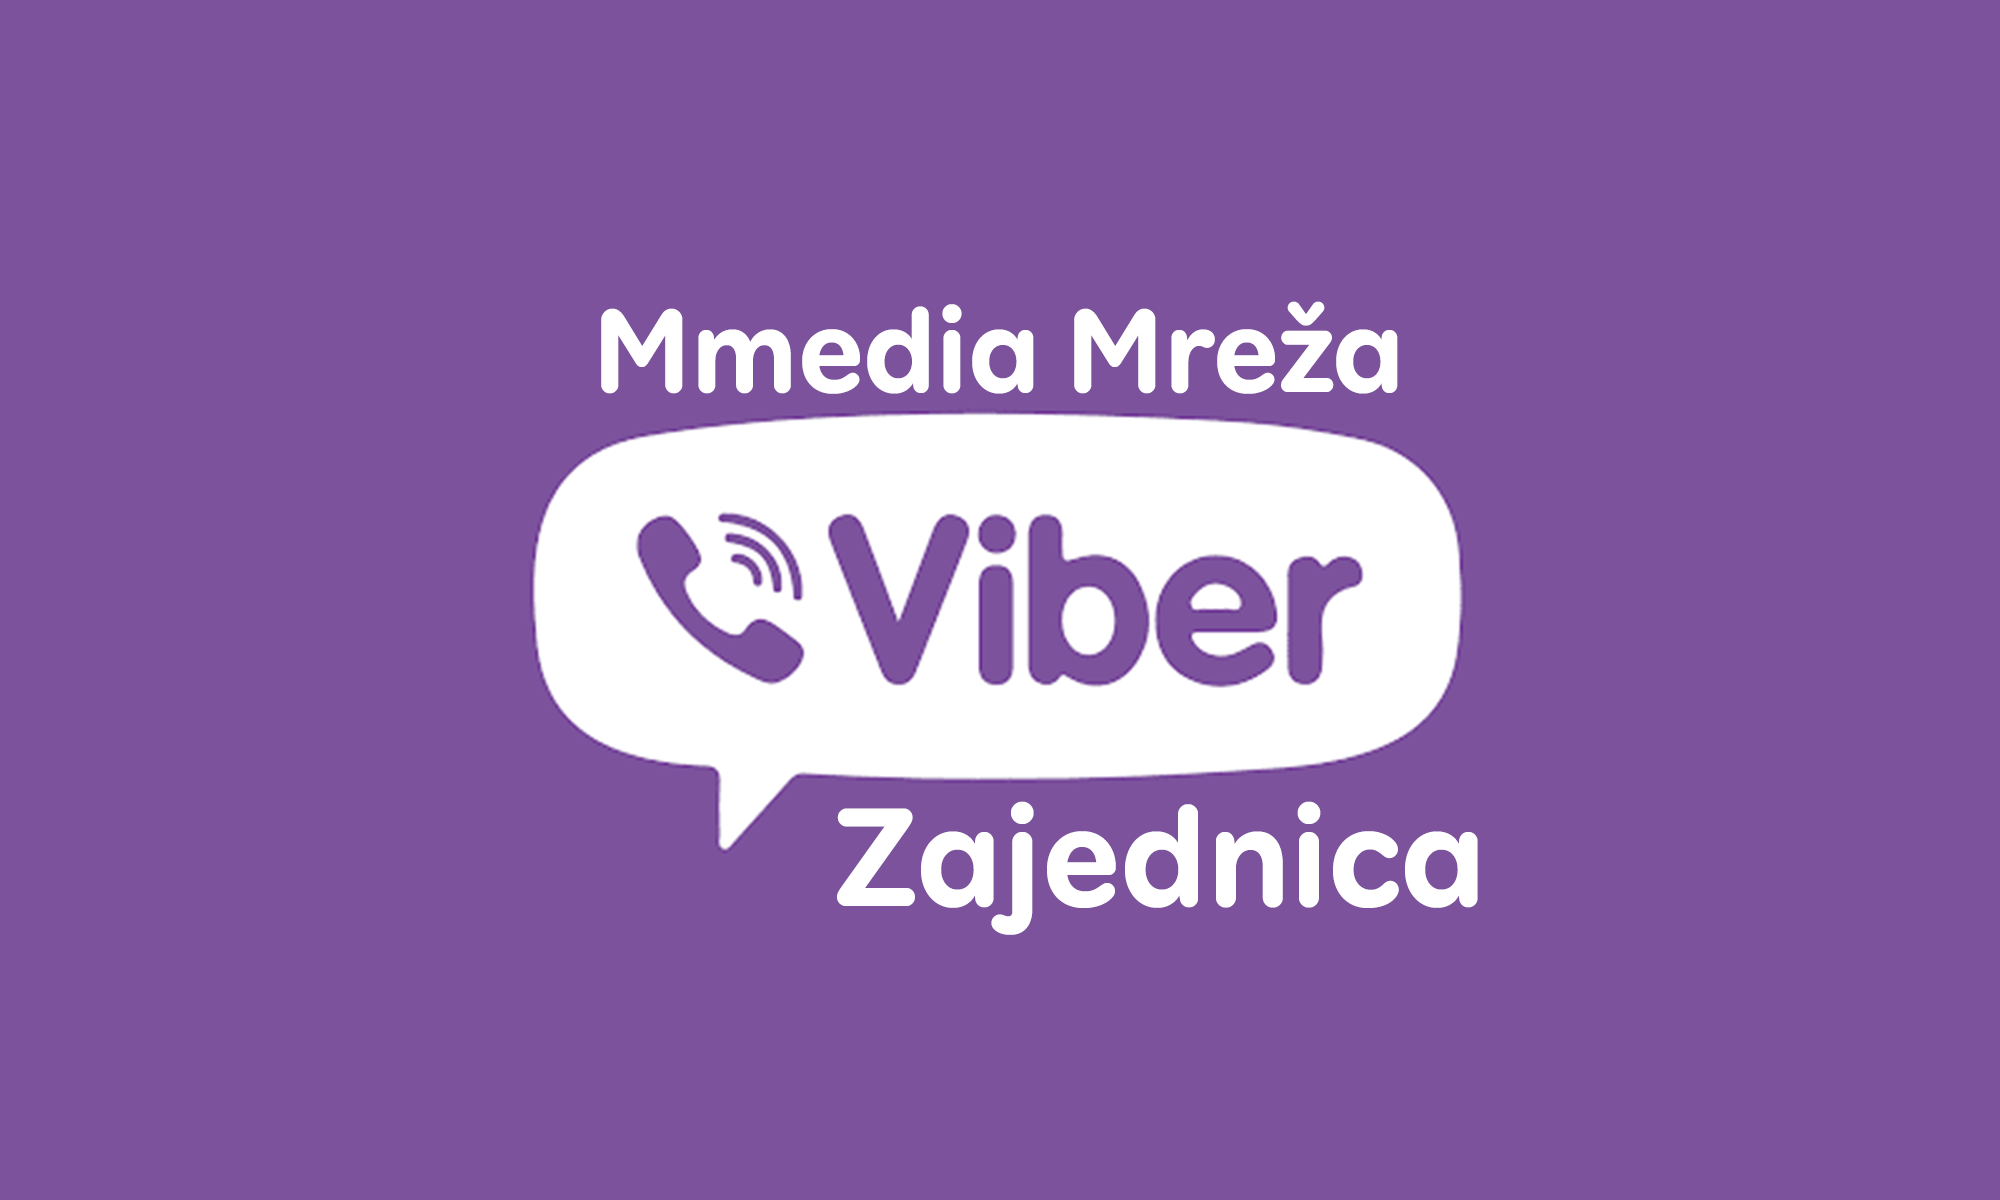 Otvorena je: Mmedia Mreža - Viber zajednica, pridružite se!